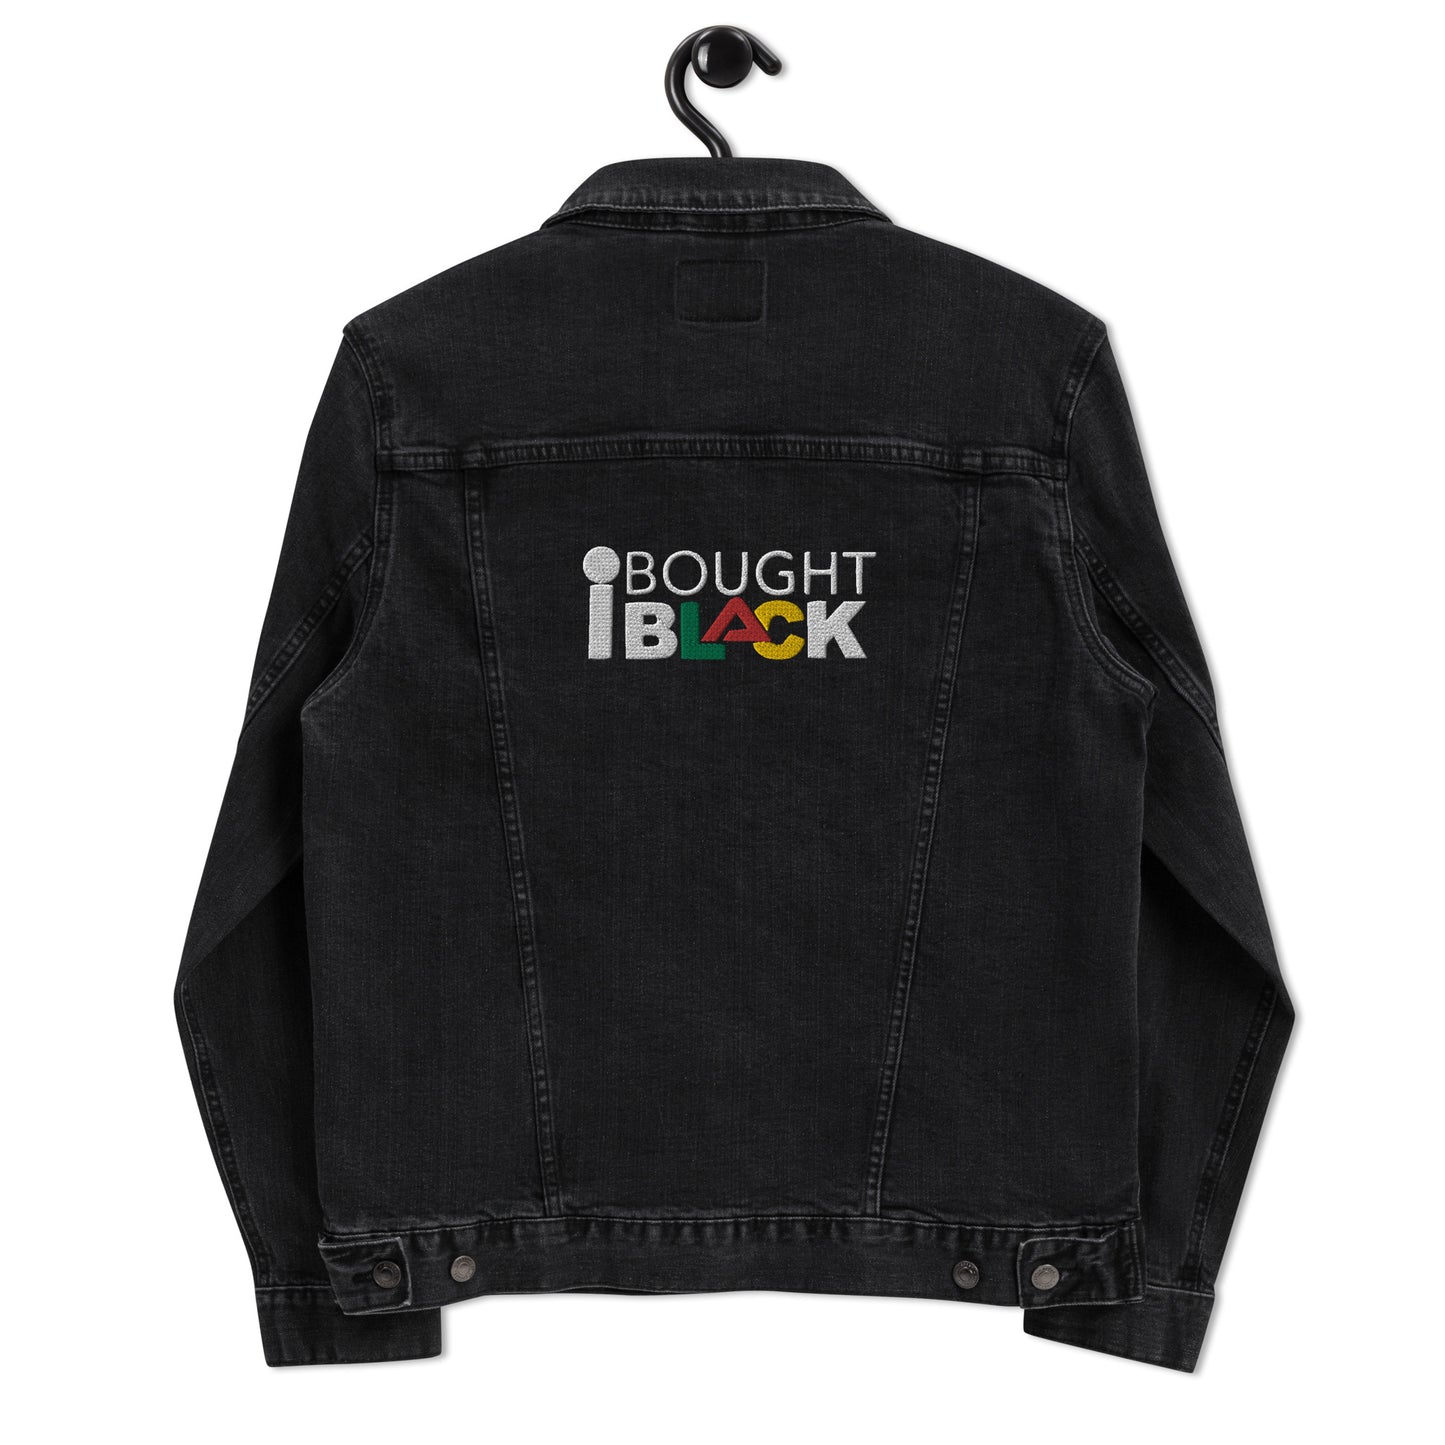 I Bought Black Denim Jacket (Unisex)